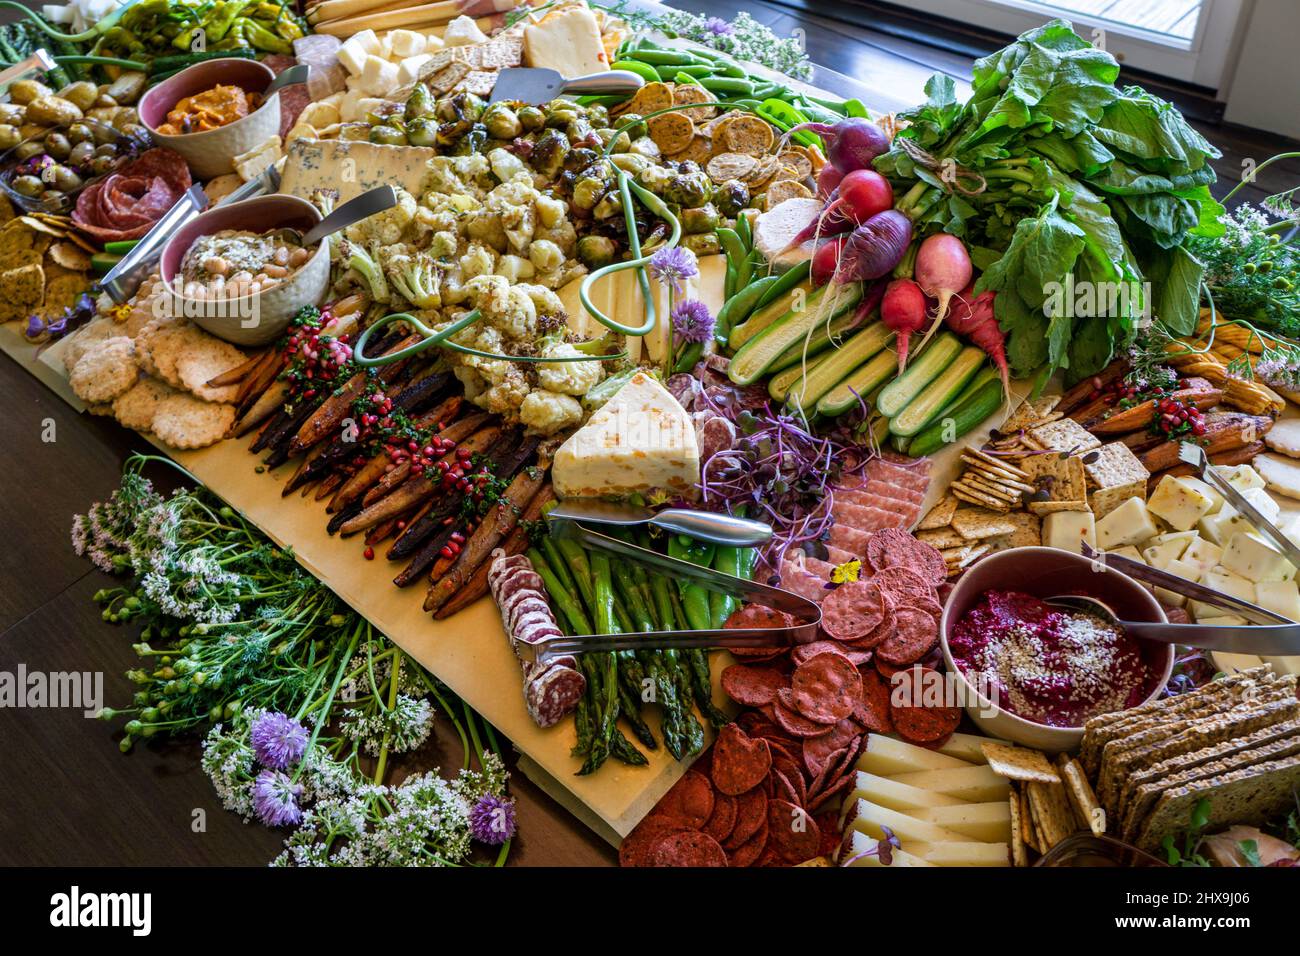 Weidebrett mit verschiedenen Wurstwaren, Obst, Gemüse und Käse Stockfoto